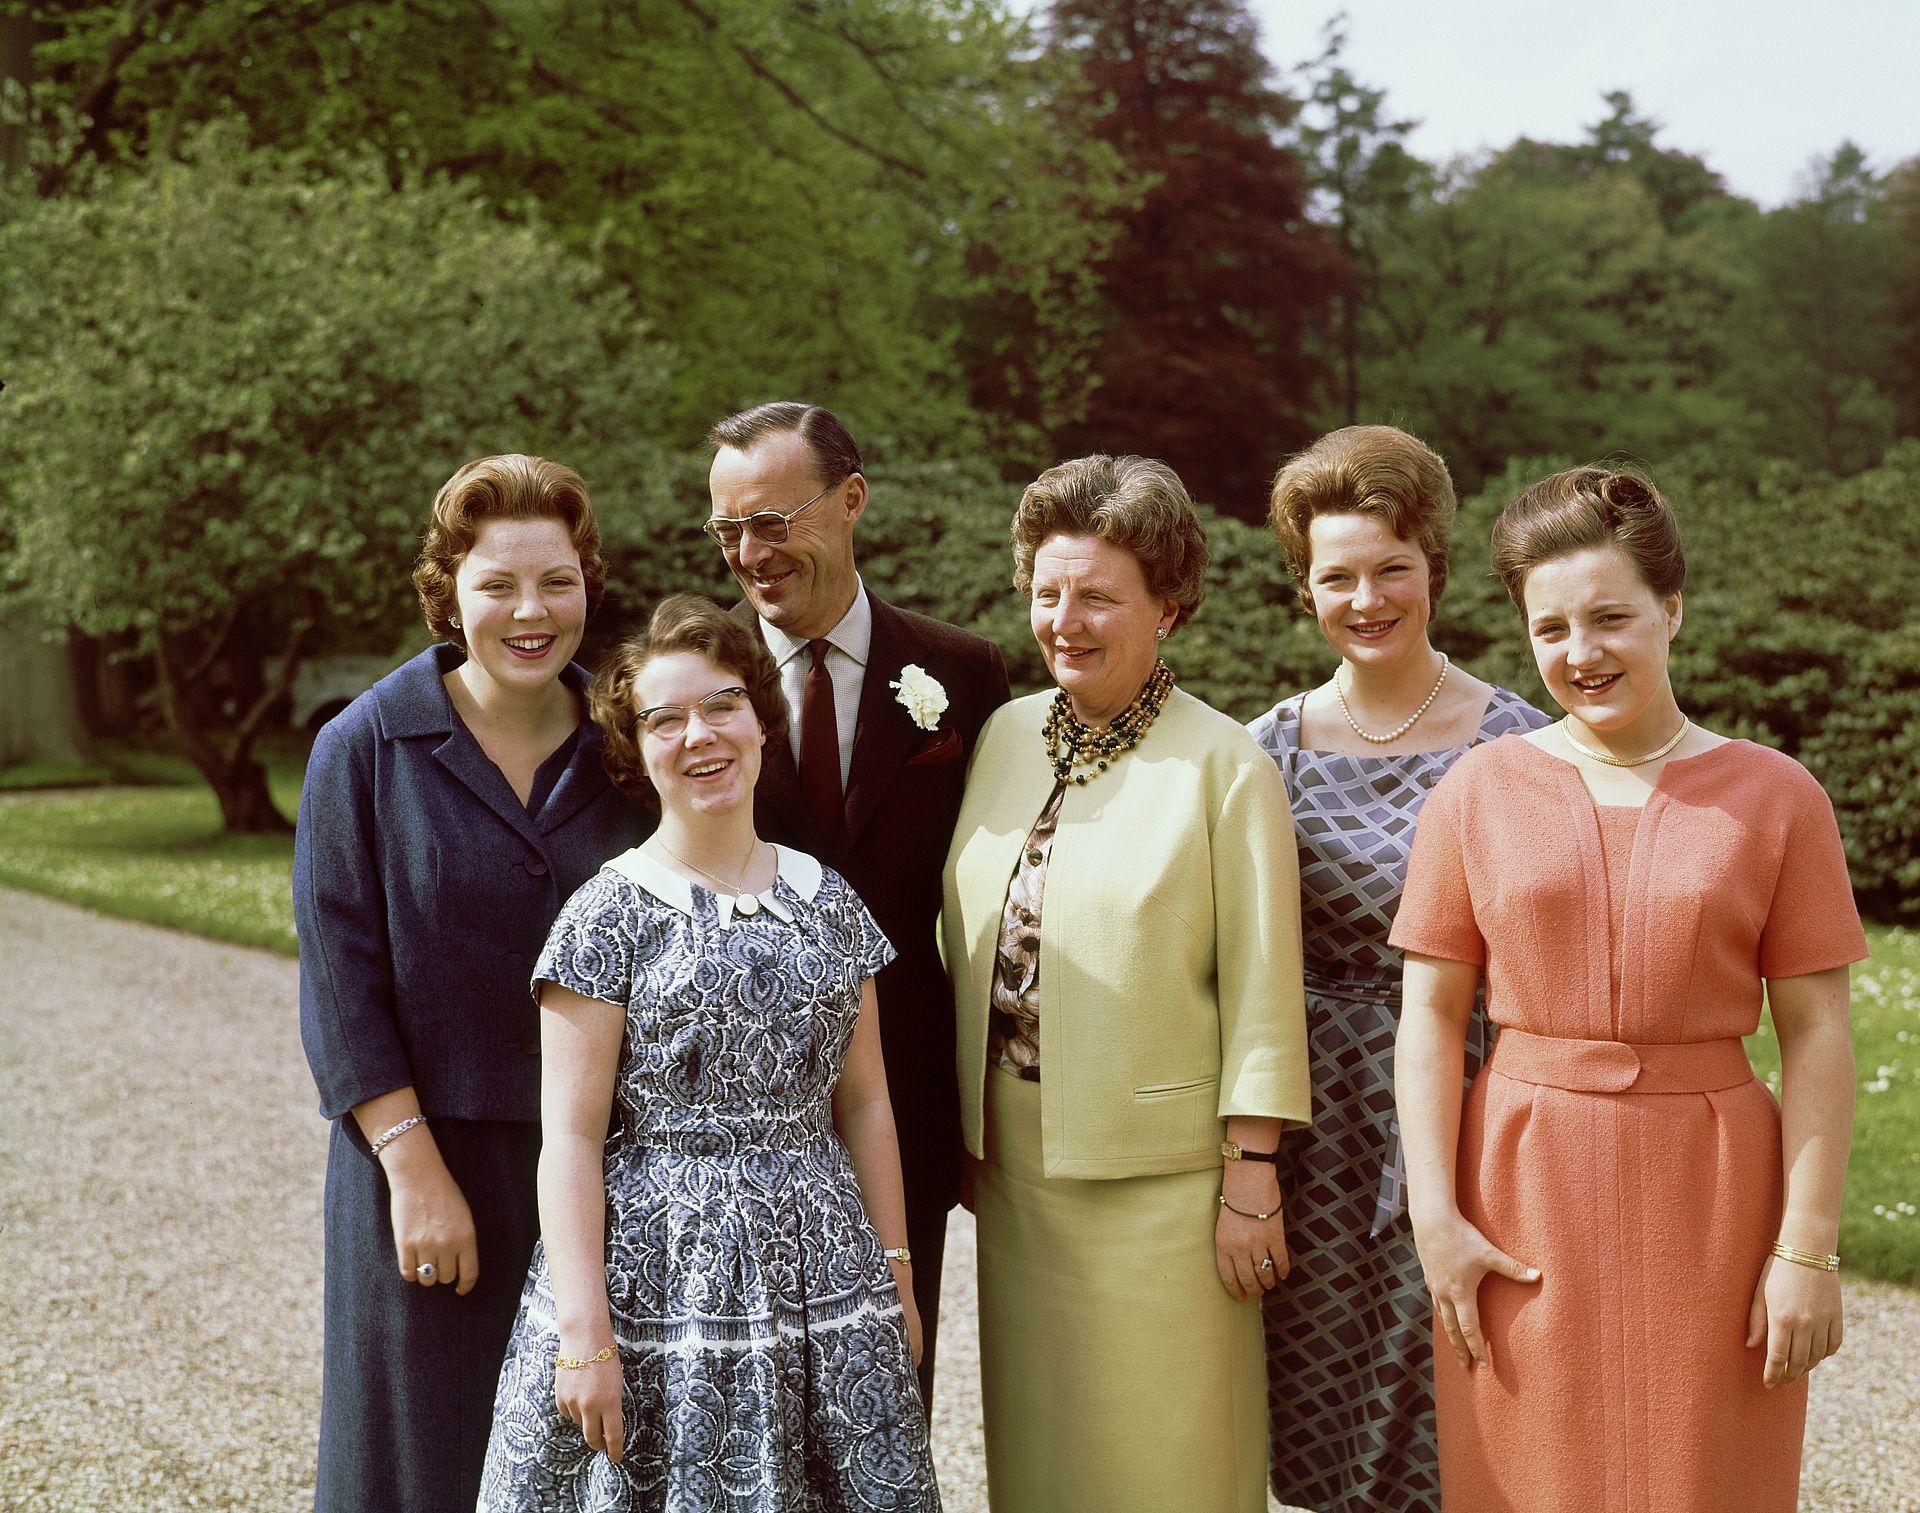 Een zomerse foto van de koninklijke familie uit 1961. V.l.n.r. zien we de prinsessen Beatrix en